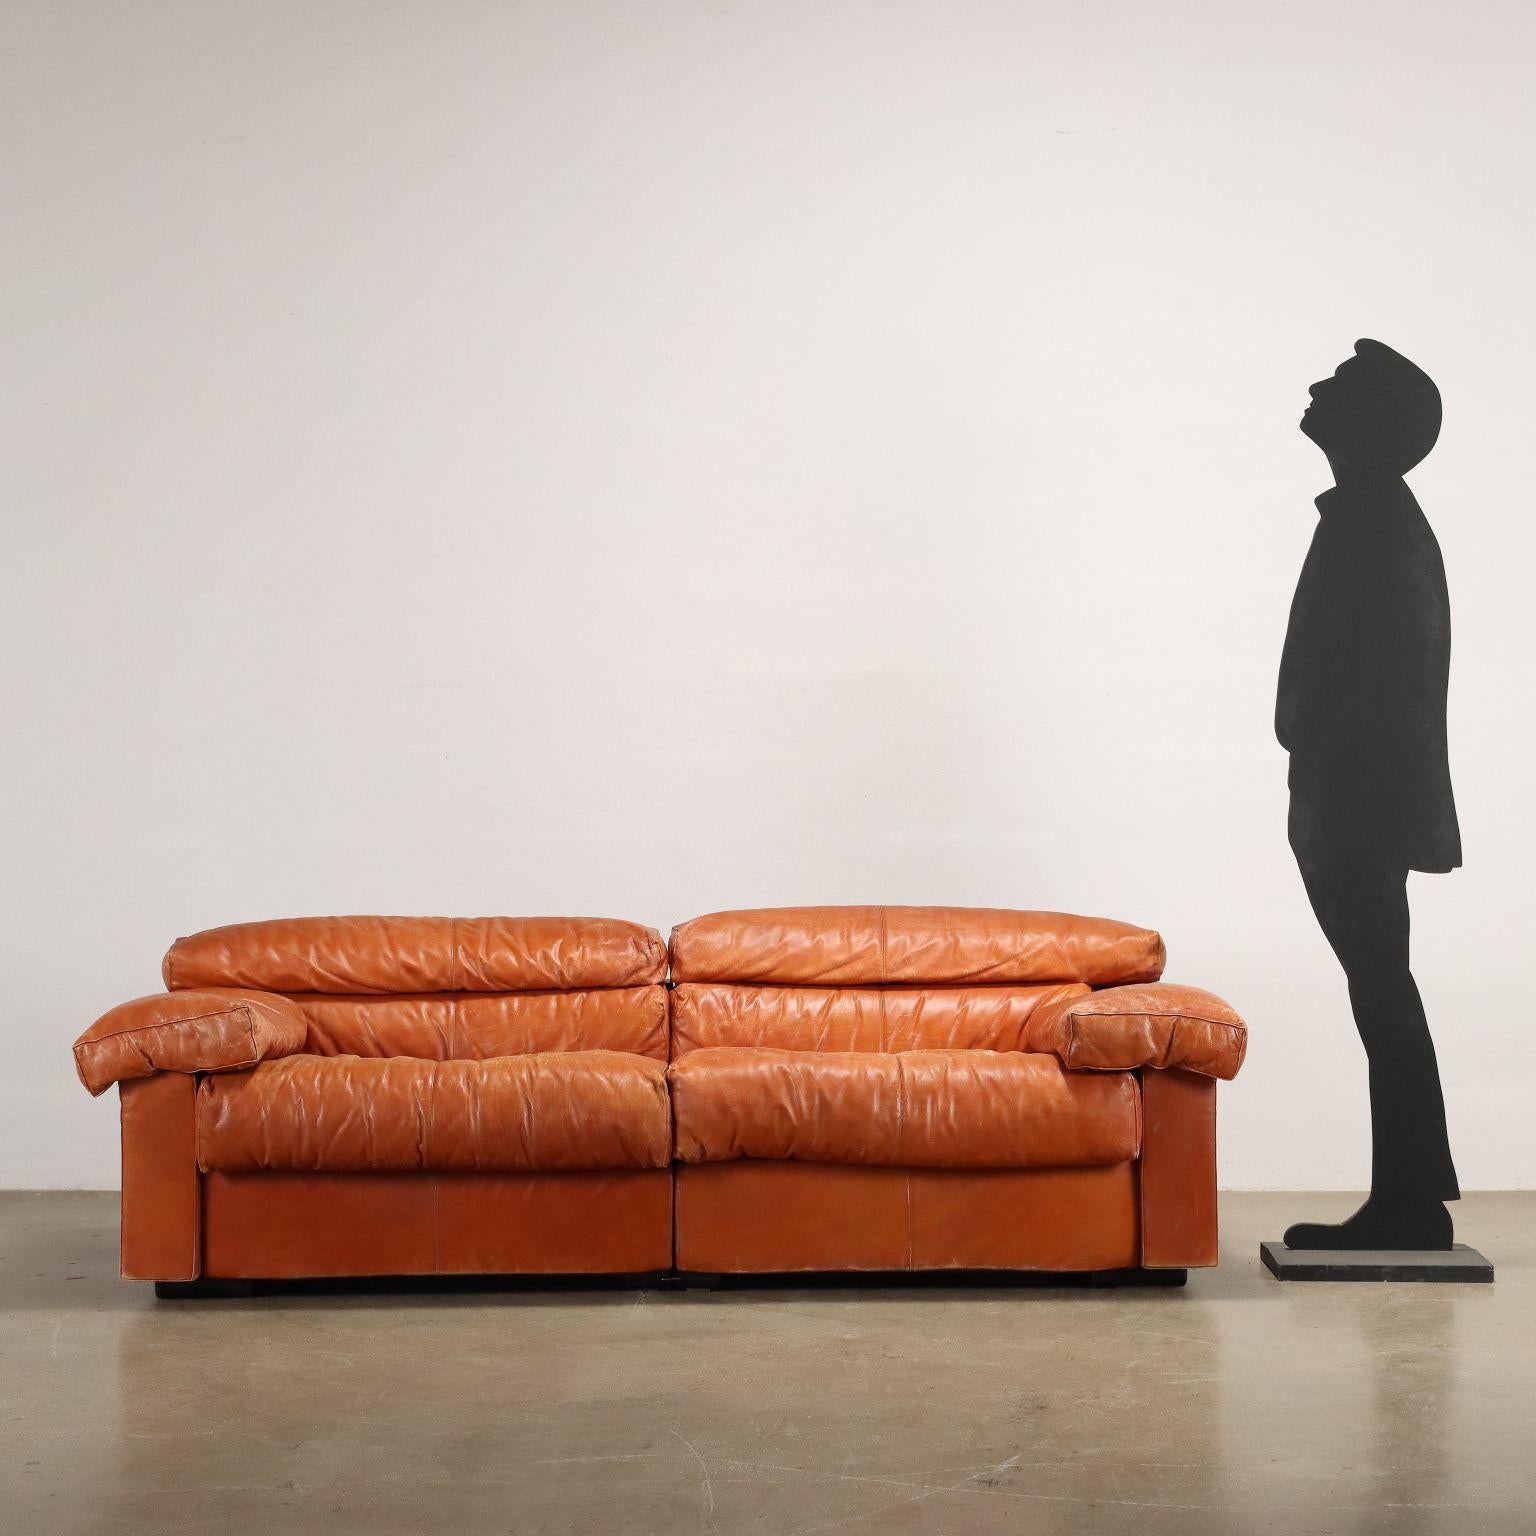 2-Sitzer-Sofa, Schaumstoffpolsterung, Lederpolsterung. Ordentlicher Zustand, abgenutzte Lederpolsterung.